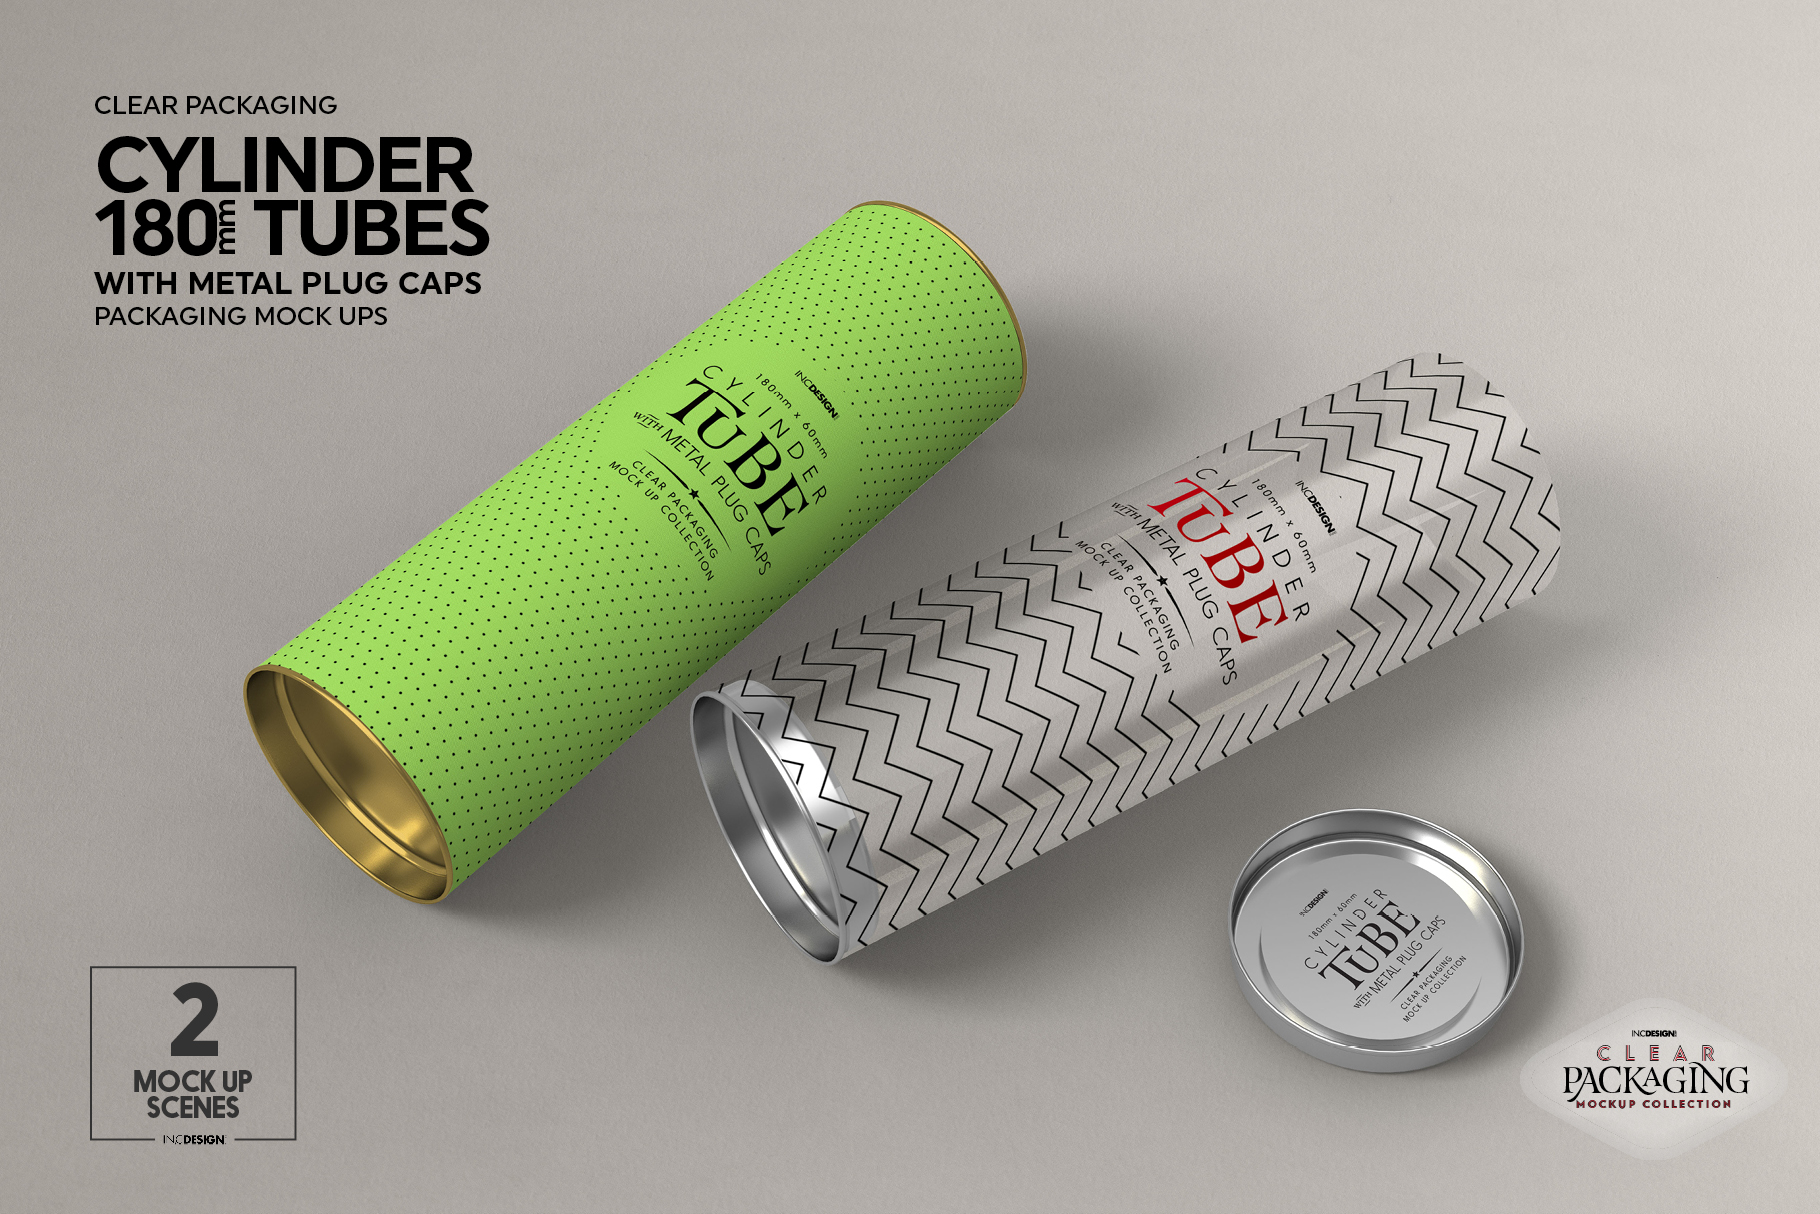 Download 180mm Cylinder Tube Packaging Mockup